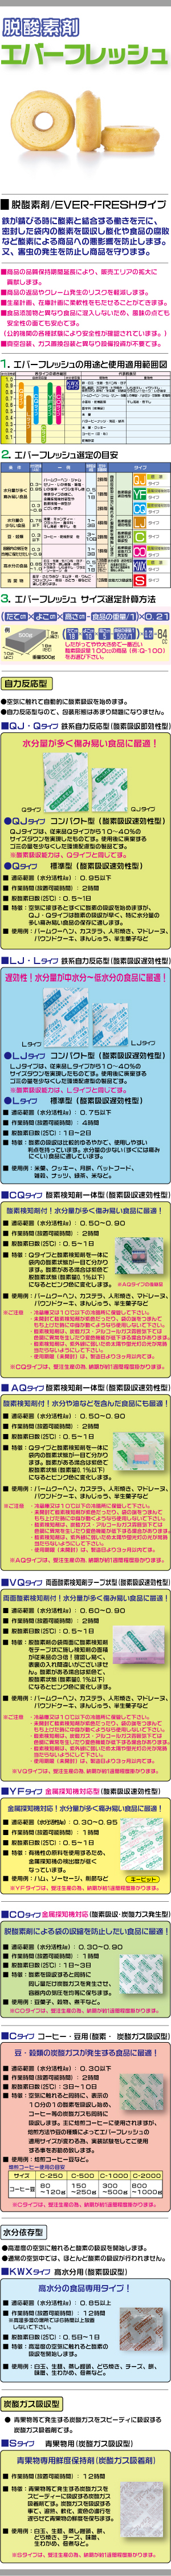 EVER-FRESH - 脱酸素剤『エバーフレッシュ』｜製造元 鳥繁産業 【商品 